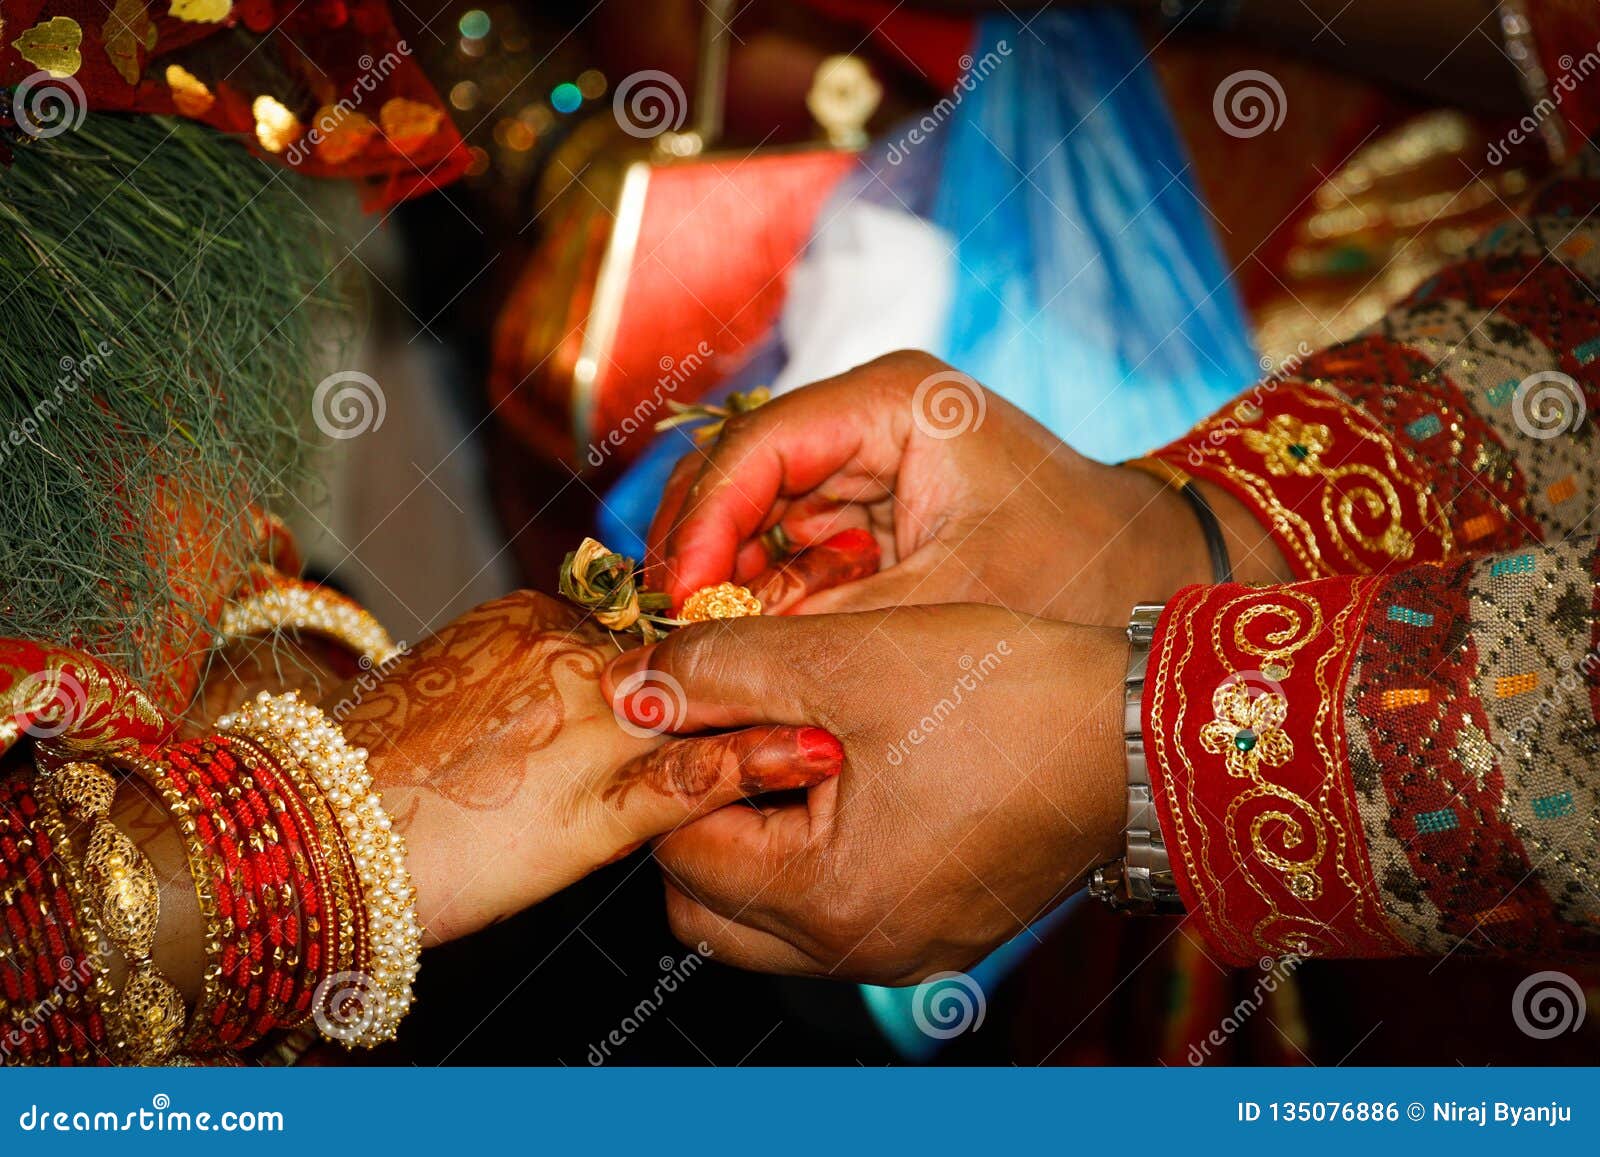 Nepali Wedding Stock Photo Image Of Bride Hands Wedding 135076886